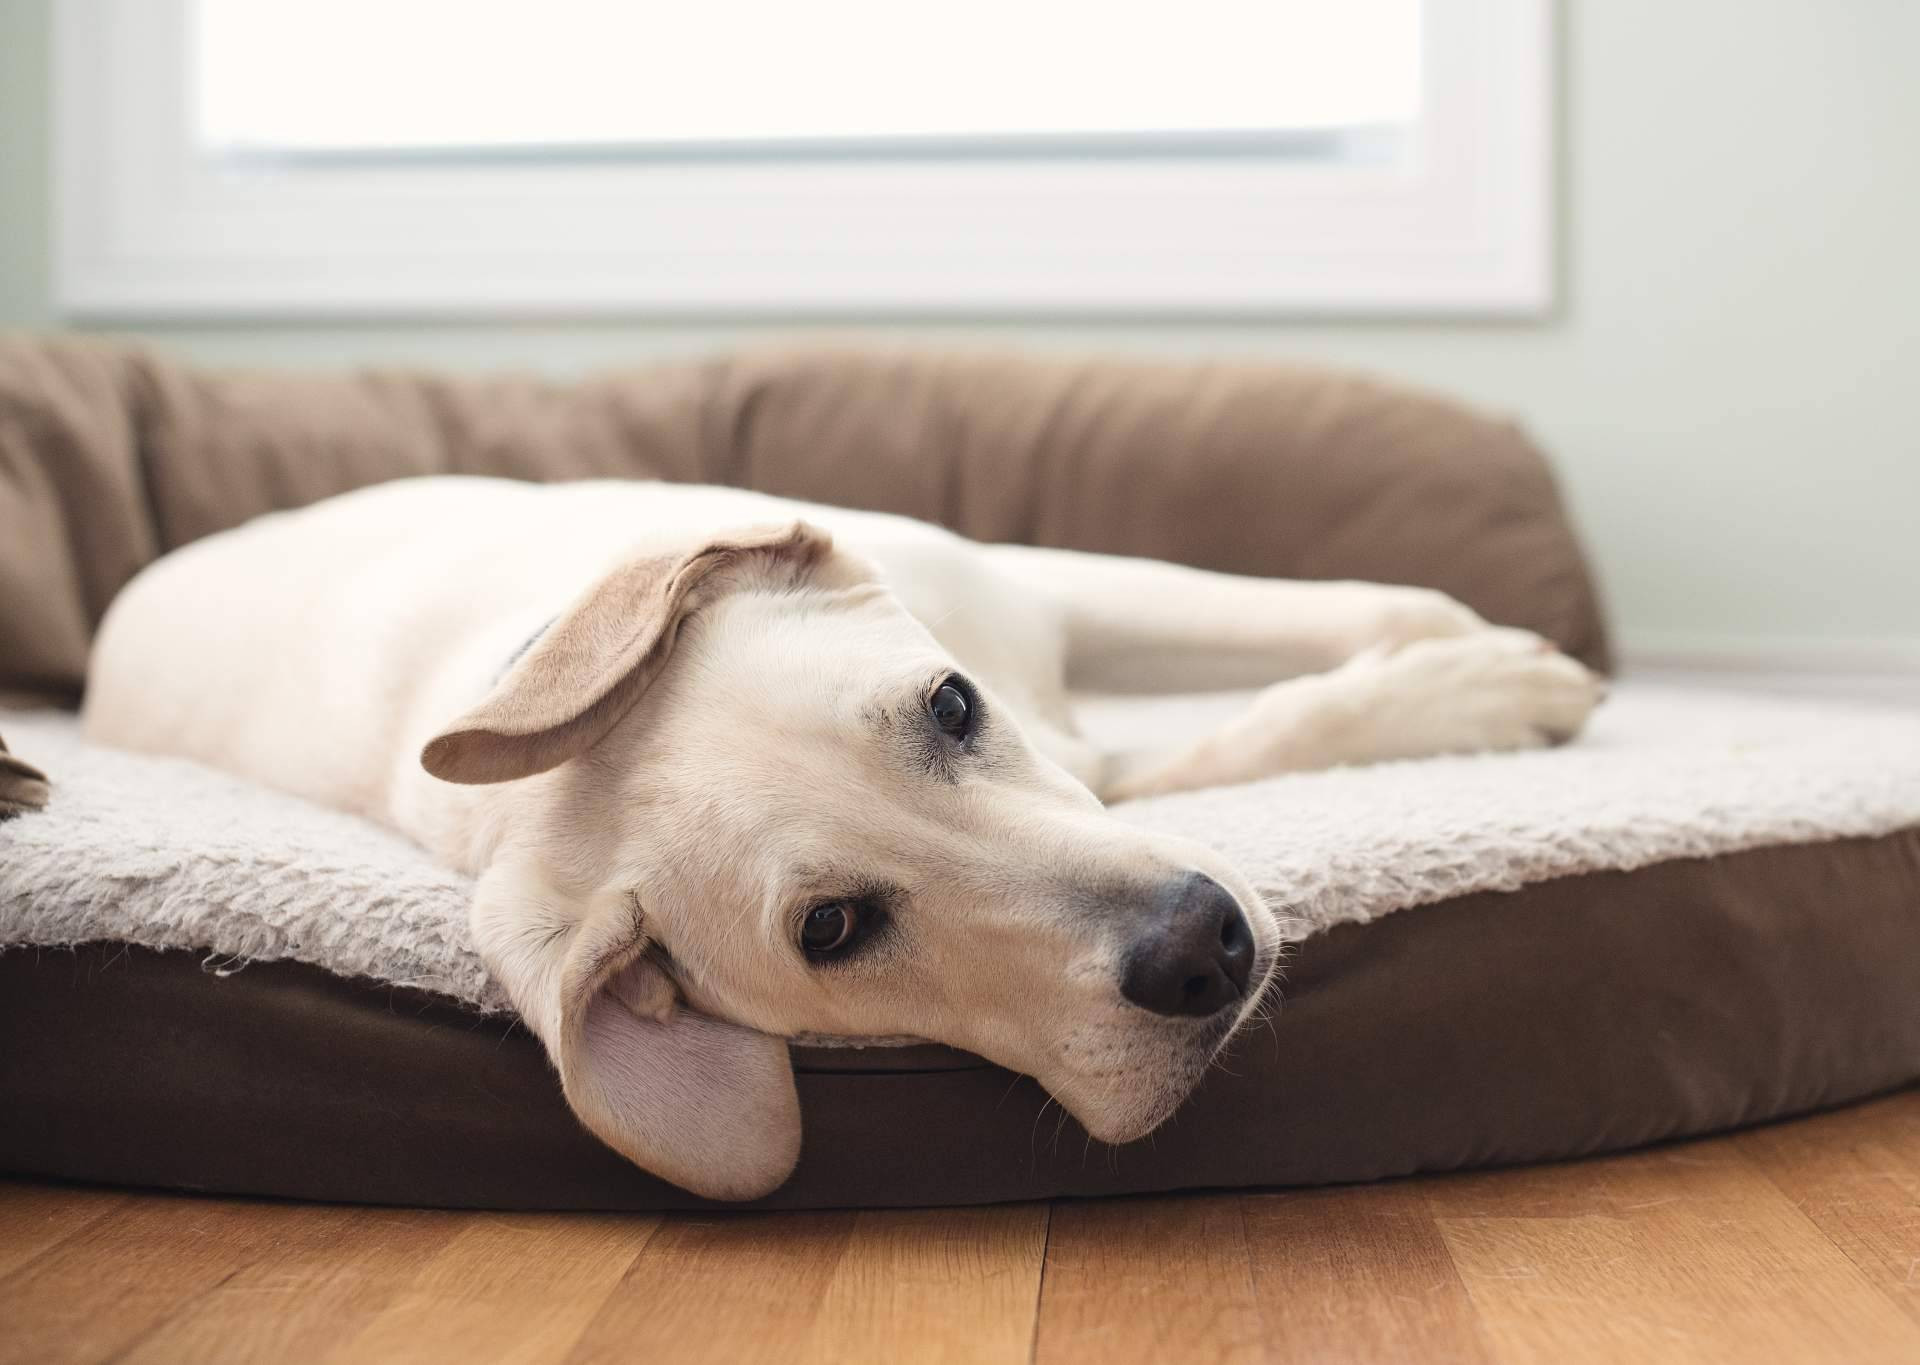  Beneficios de la cama viscoelástica para perros de ParaPerrosyGatos 